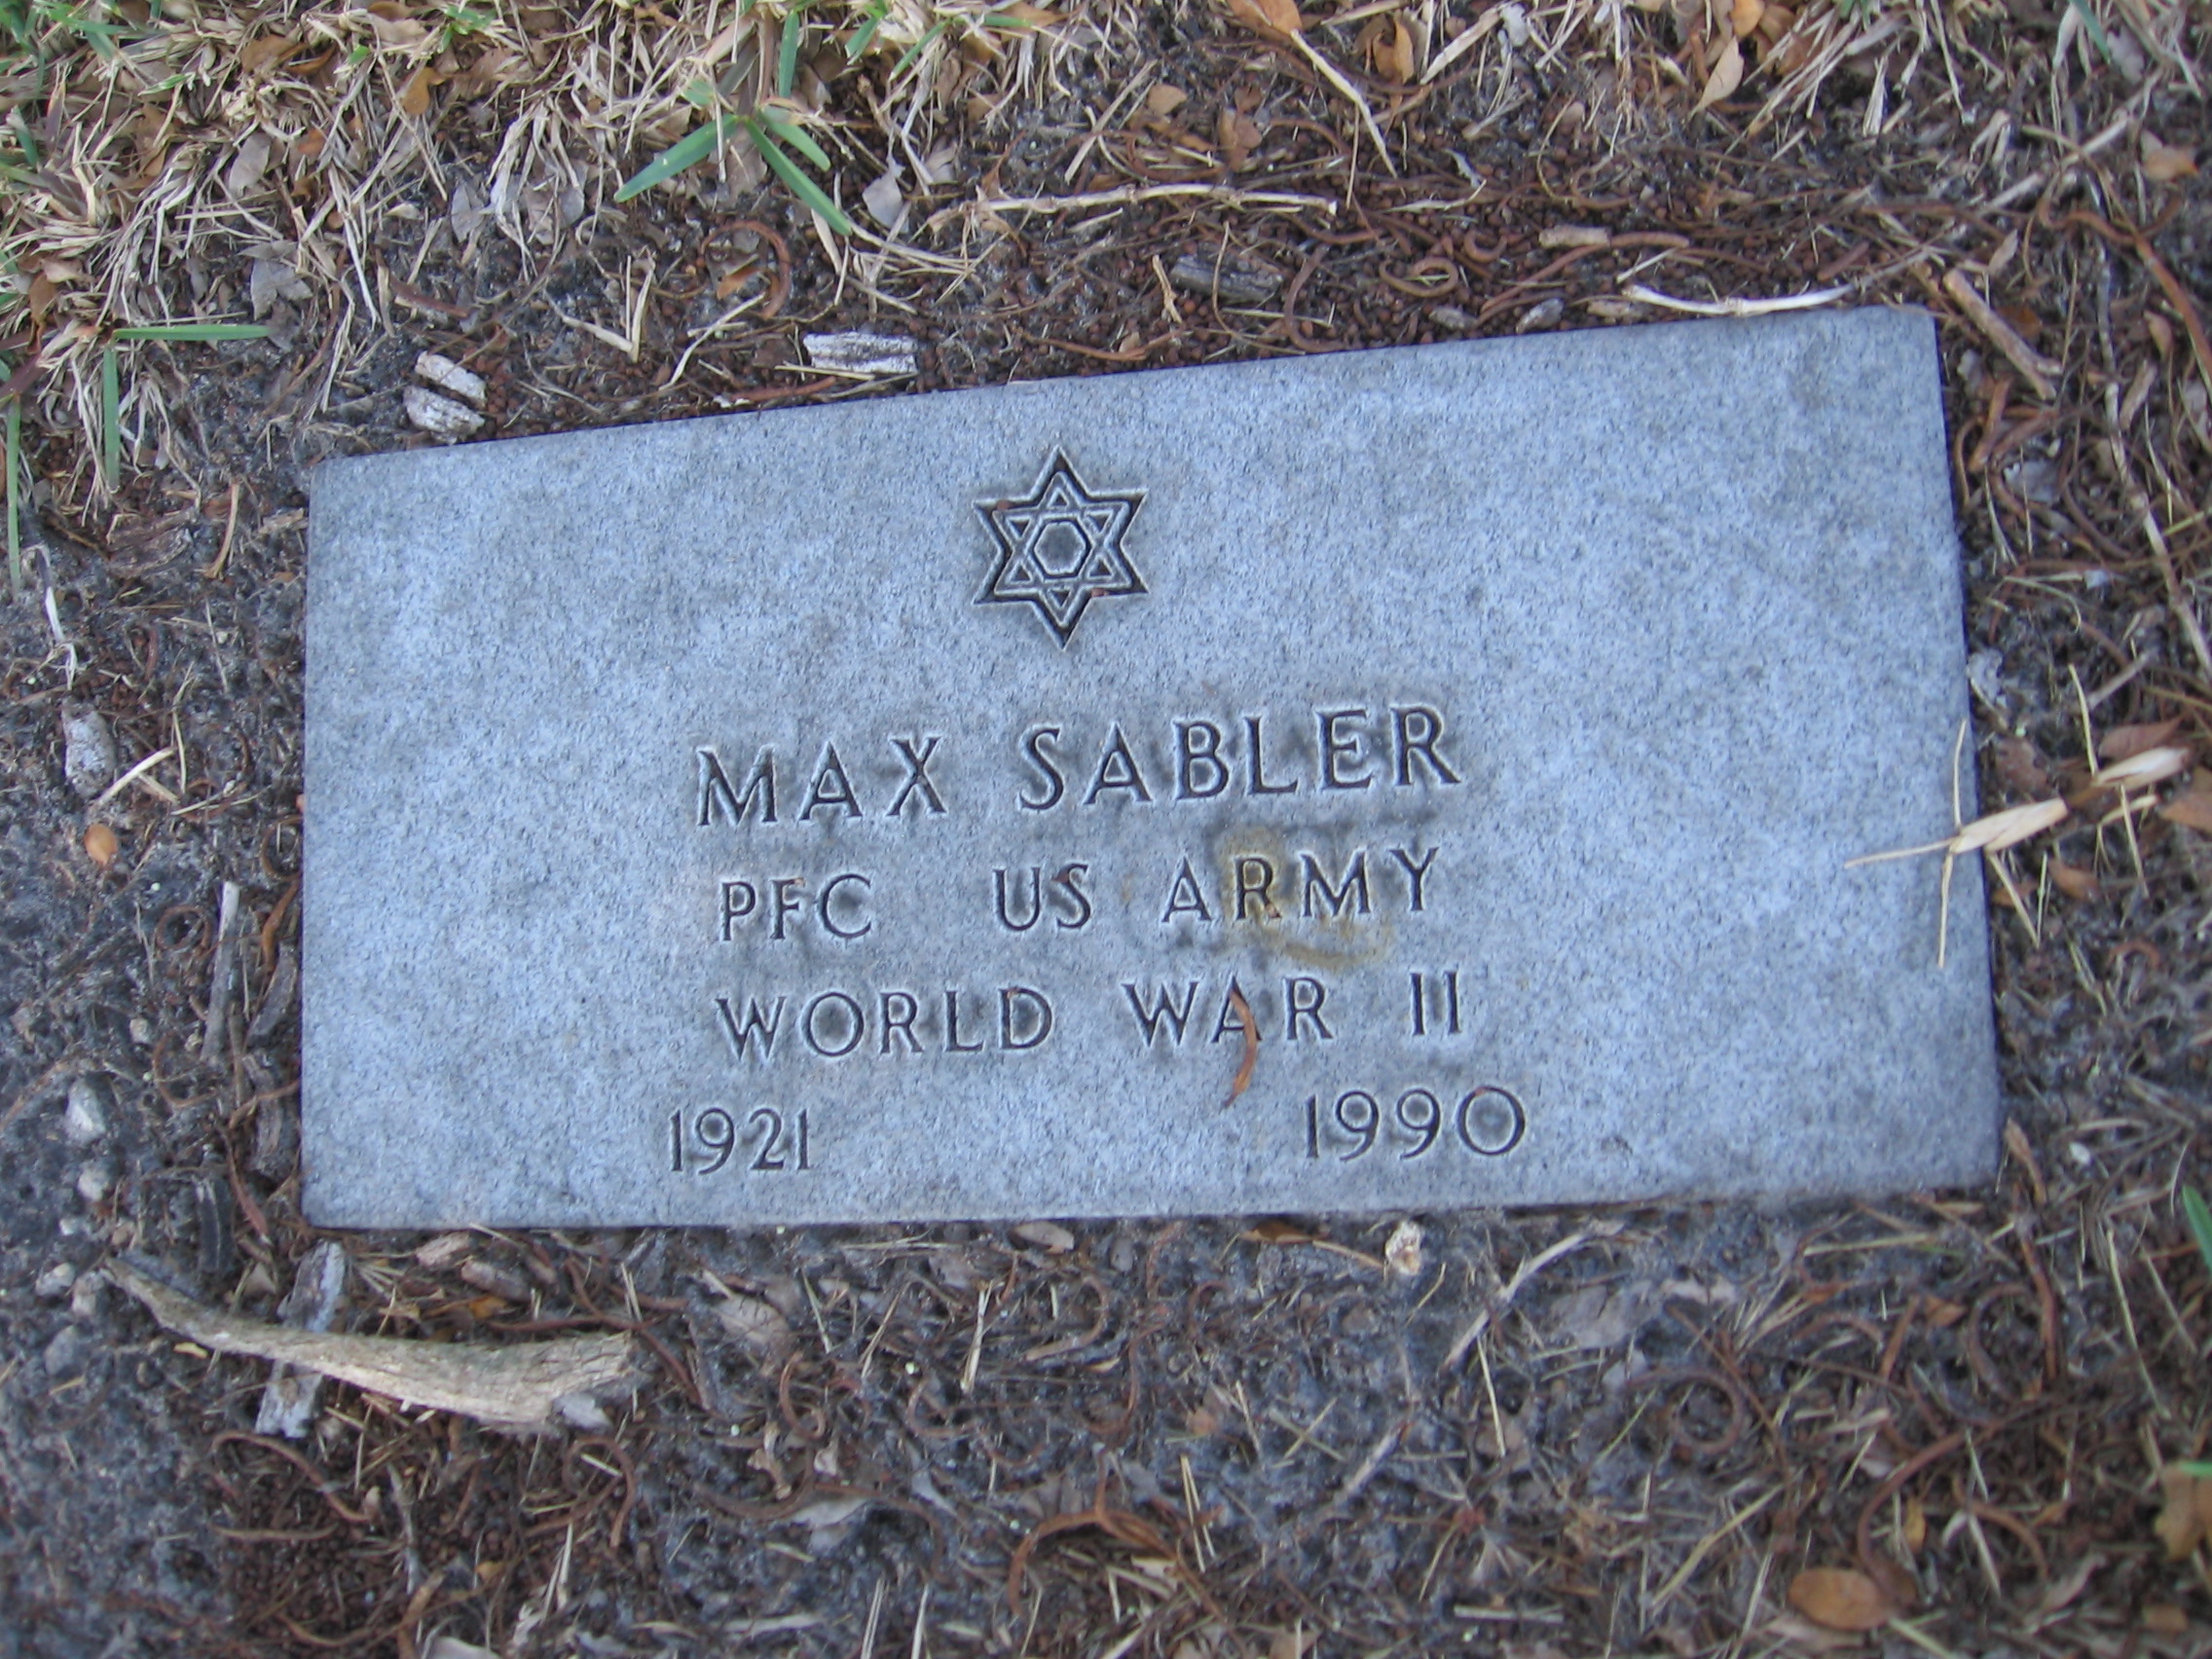 PFC Max Sabler